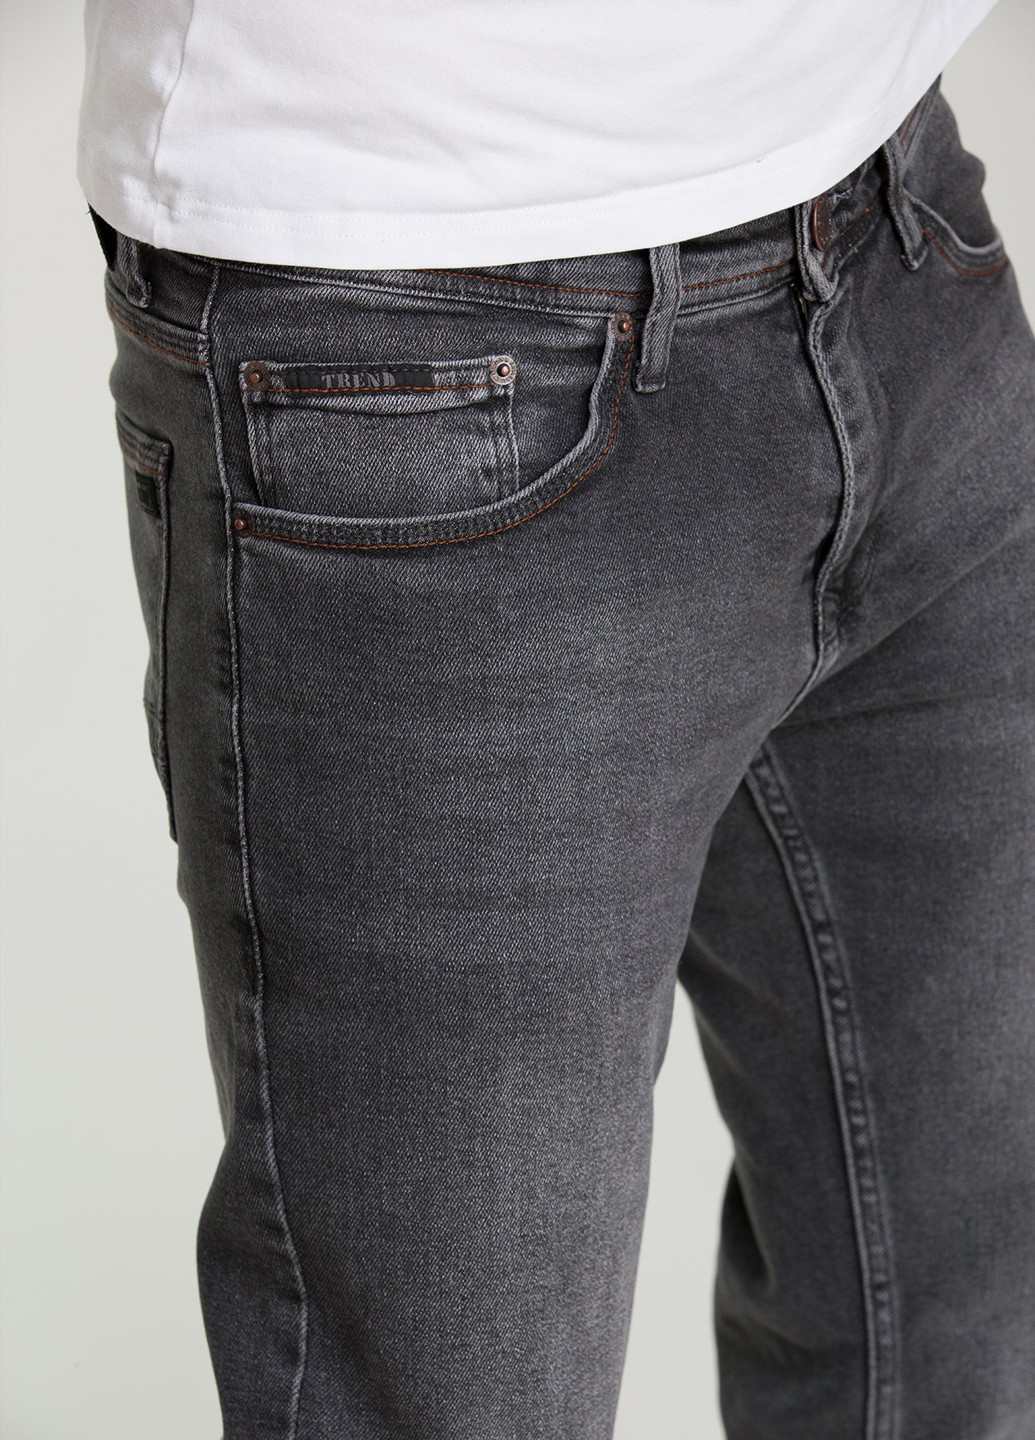 Графитовые демисезонные прямые джинсы Trend Collection